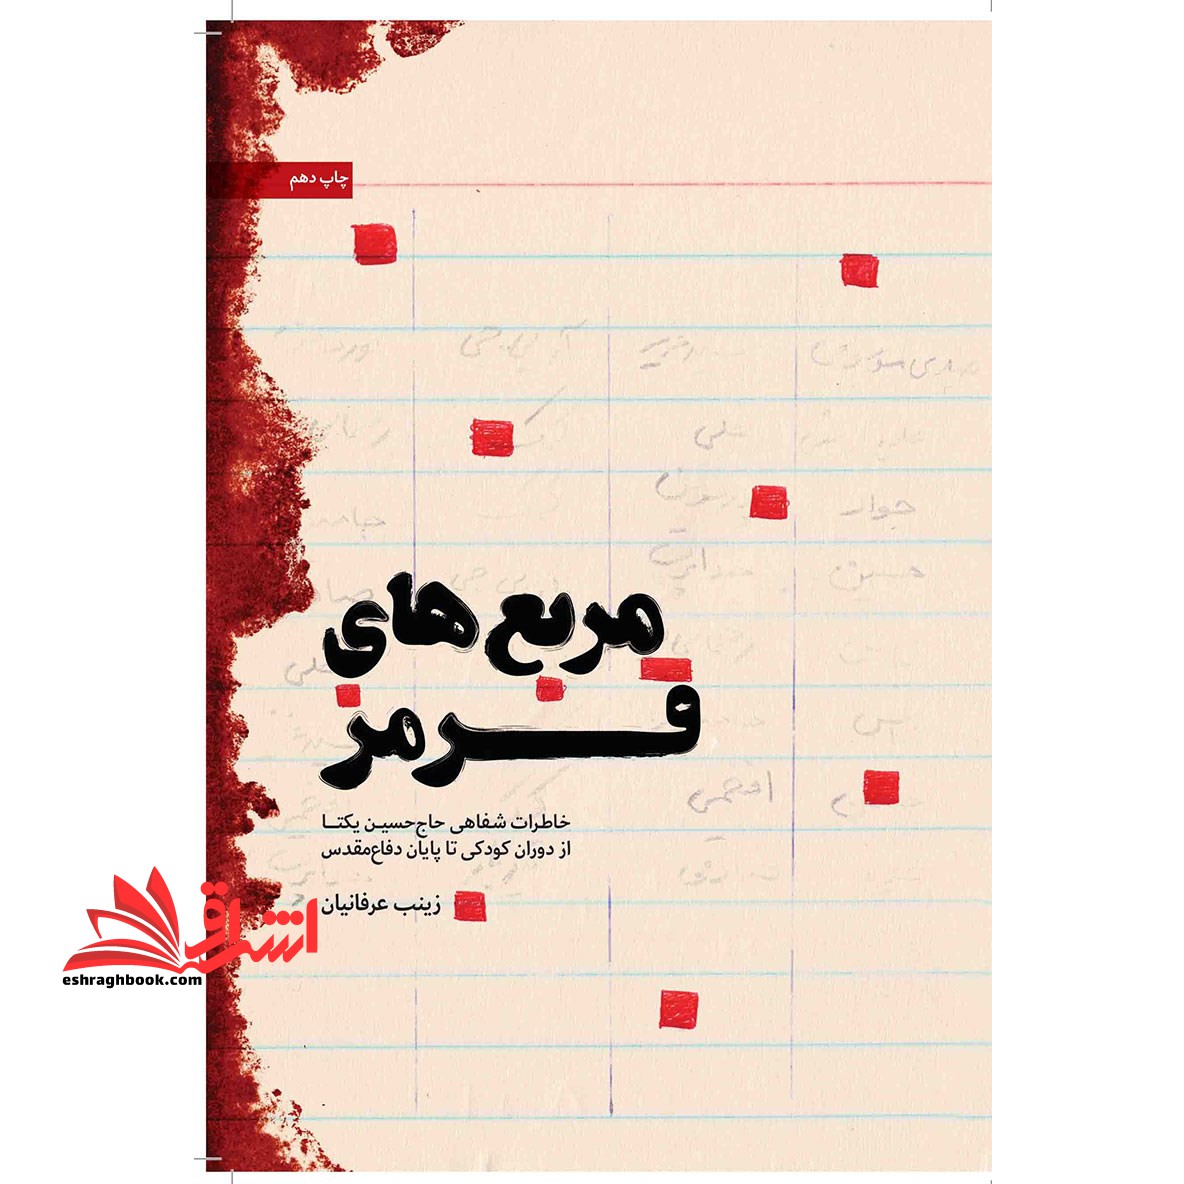 کتاب مربع های قرمز - (خاطرات شفاهی حاج حسین یکتا از دوران کودکی تا پایان دفاع مقدس)